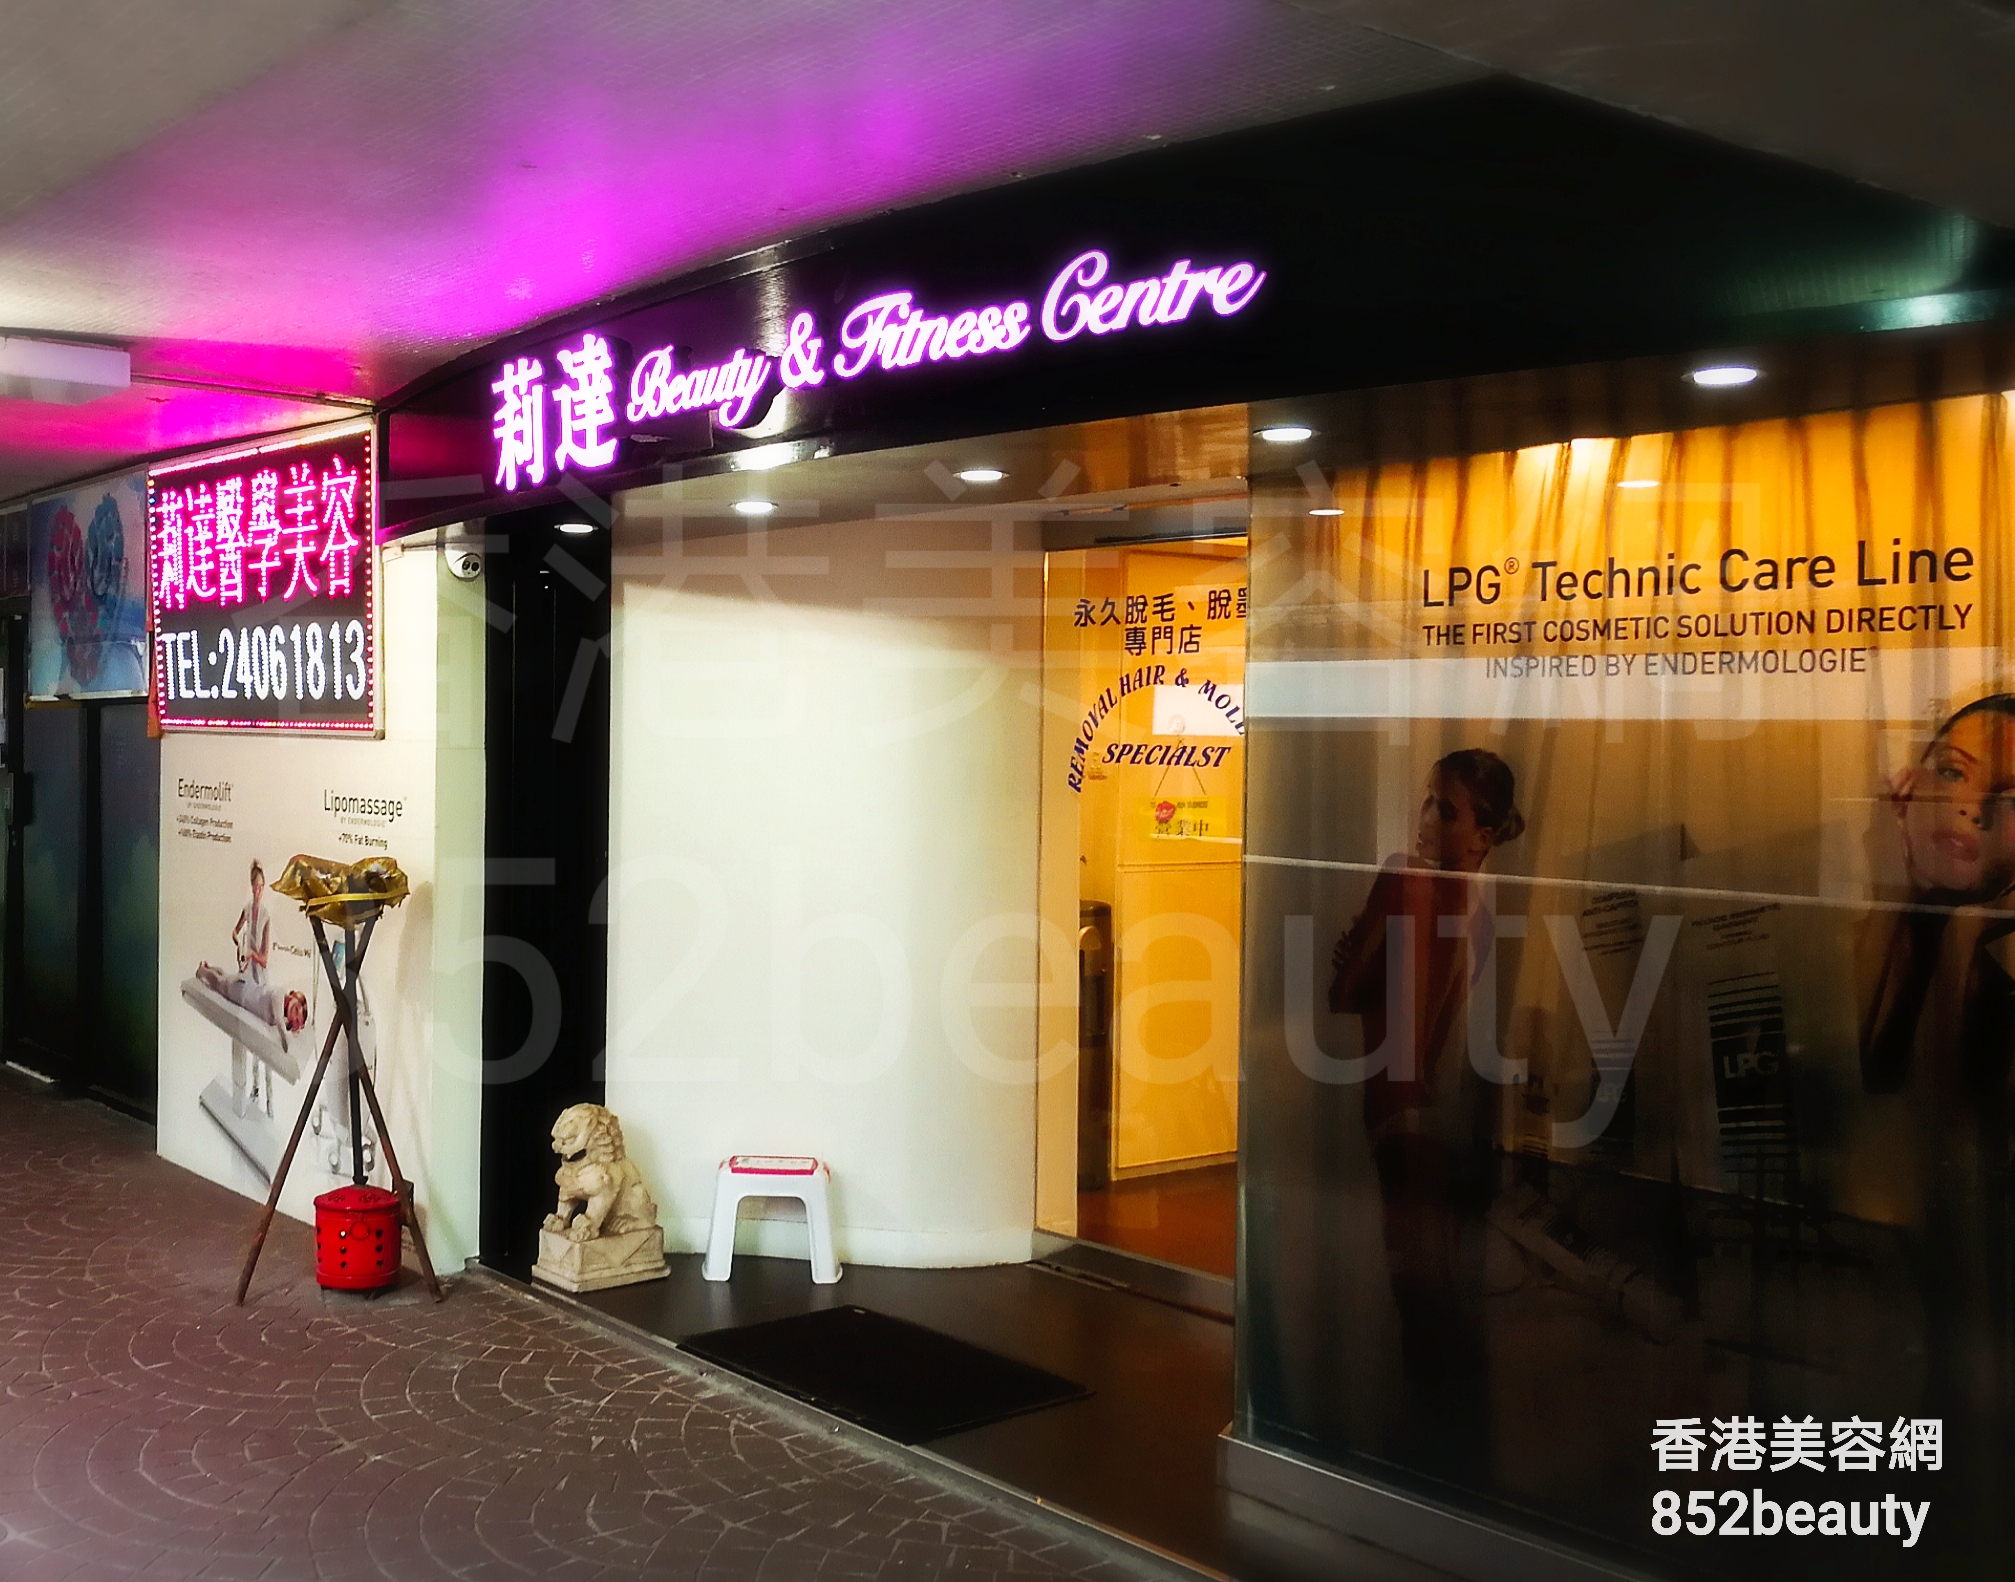 香港美容網 Hong Kong Beauty Salon 美容院 / 美容師: 莉達